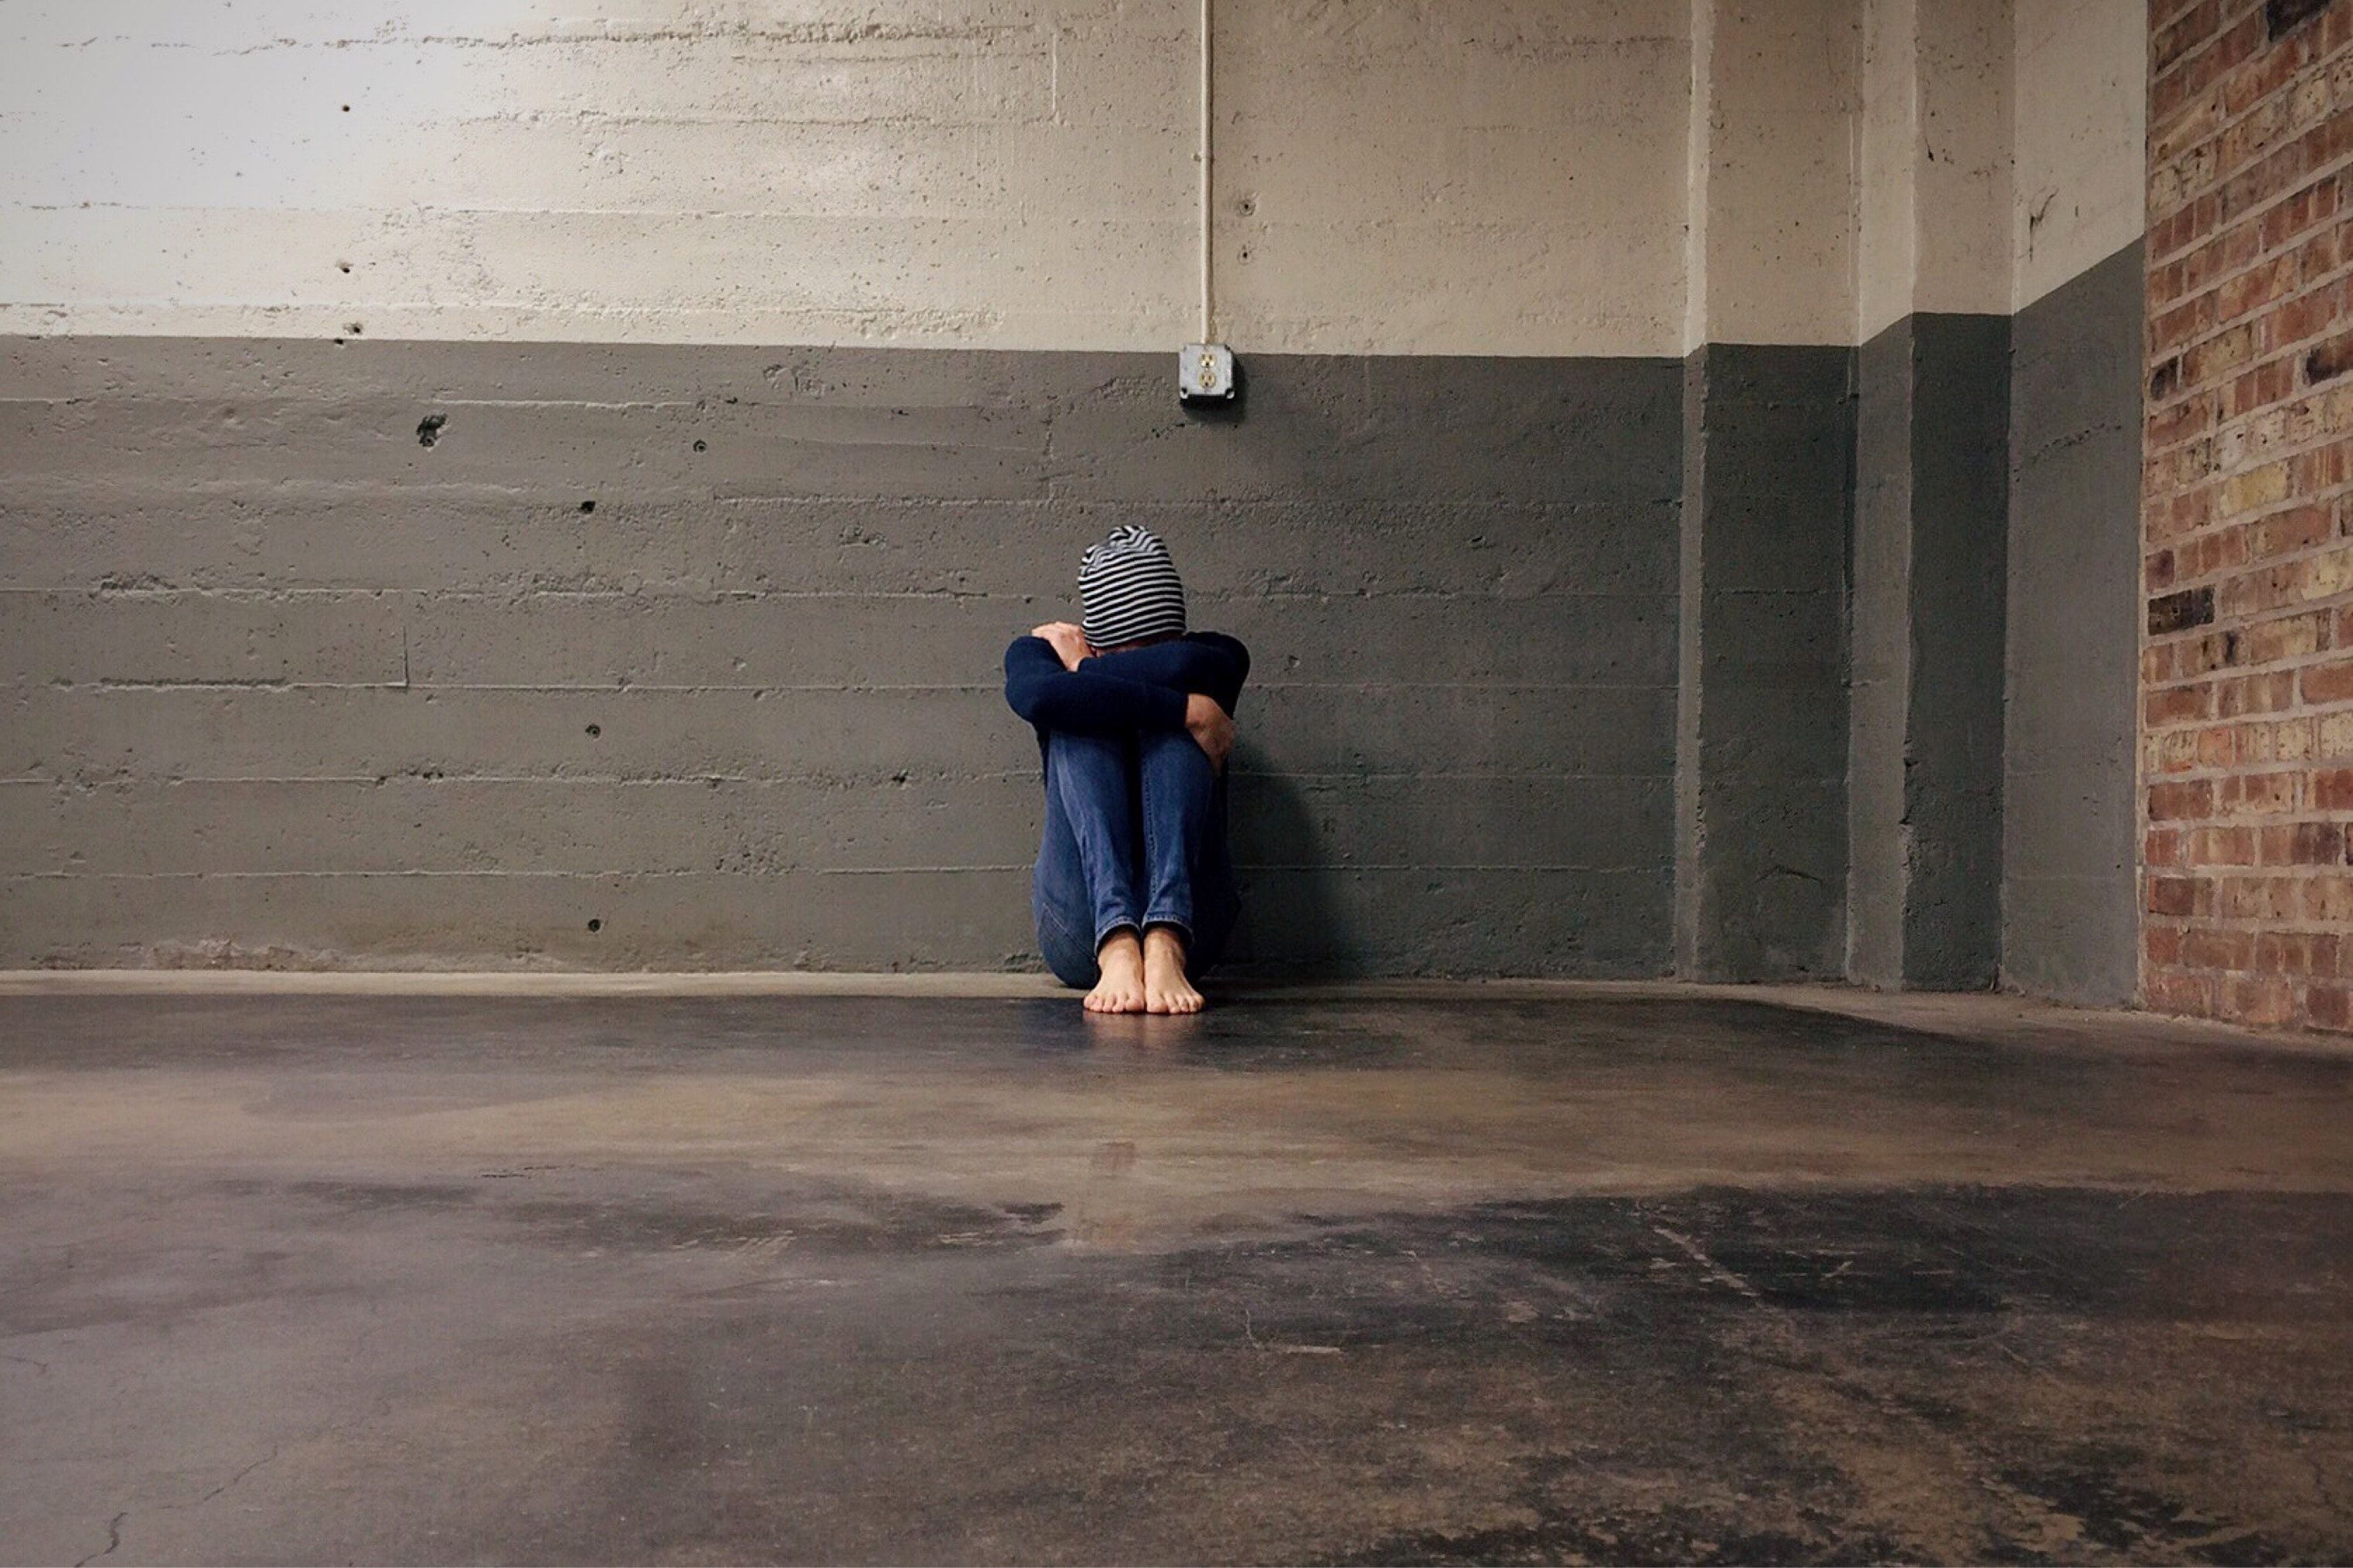 El 58% d'adolescents ingressats per problemes de salut mental s'autolesionen